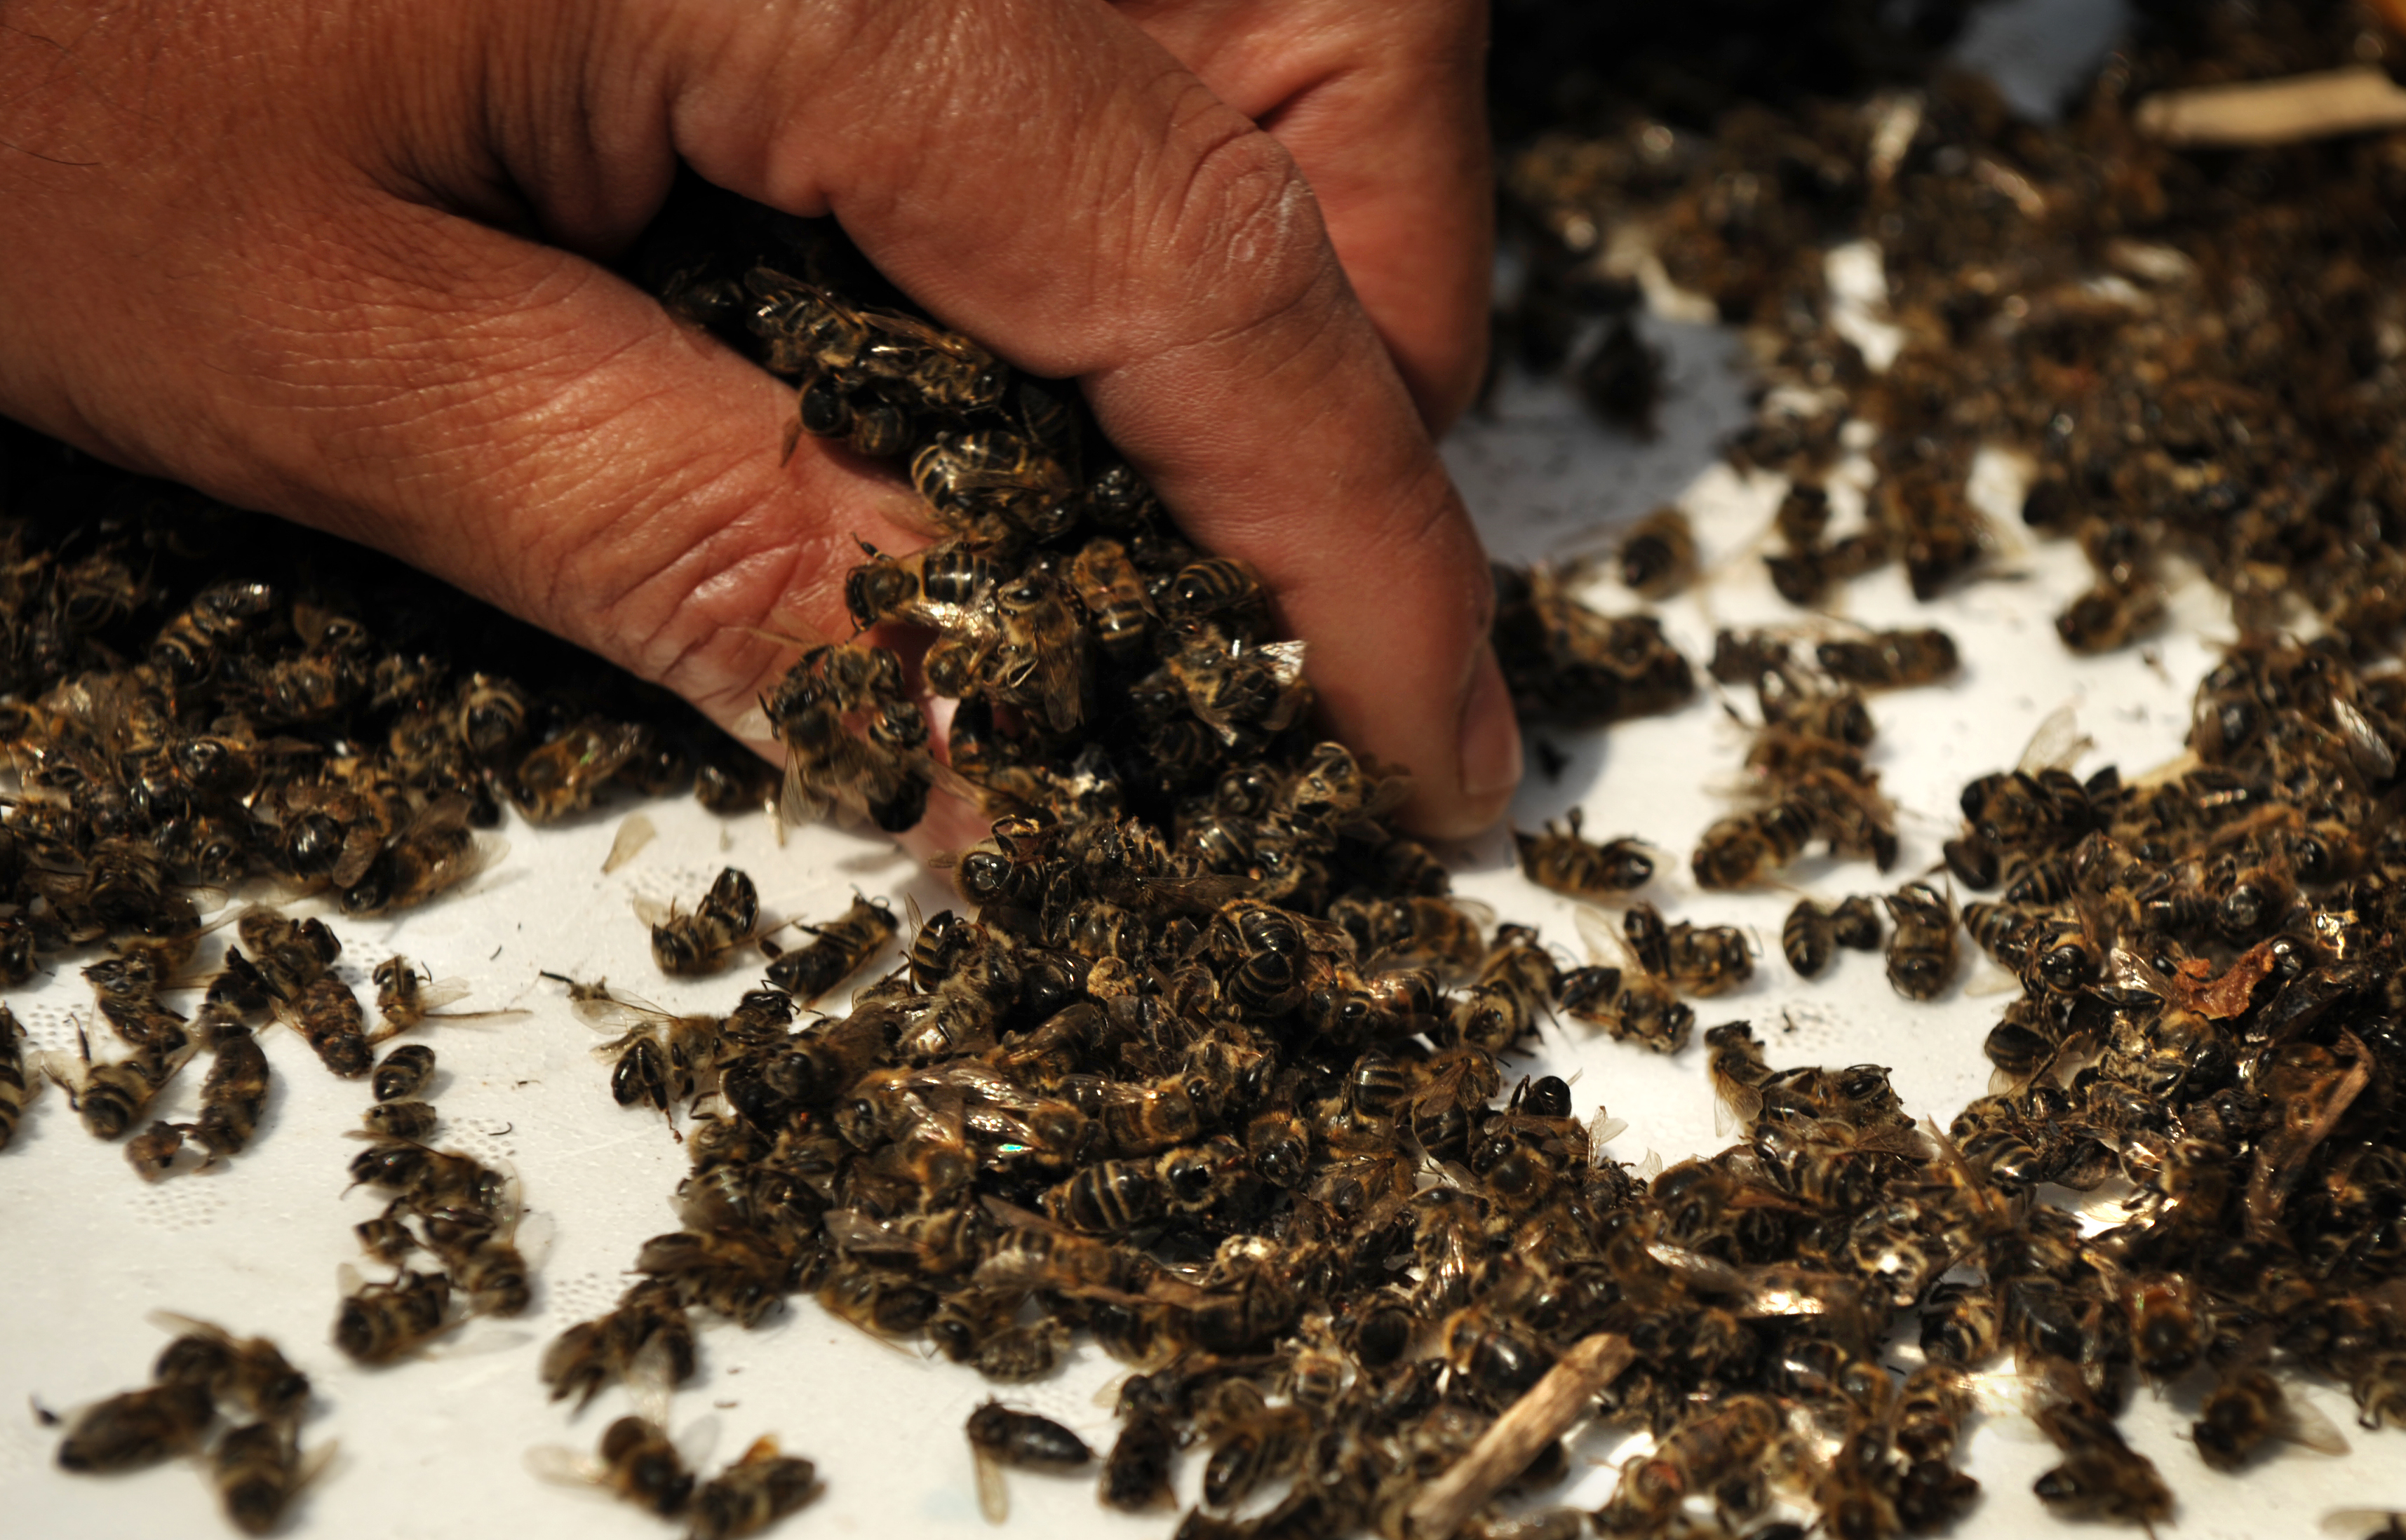 Megvan, mitől pusztultak el görcsbe rándulva gyűjtő méhek ezrei tavaly nyáron